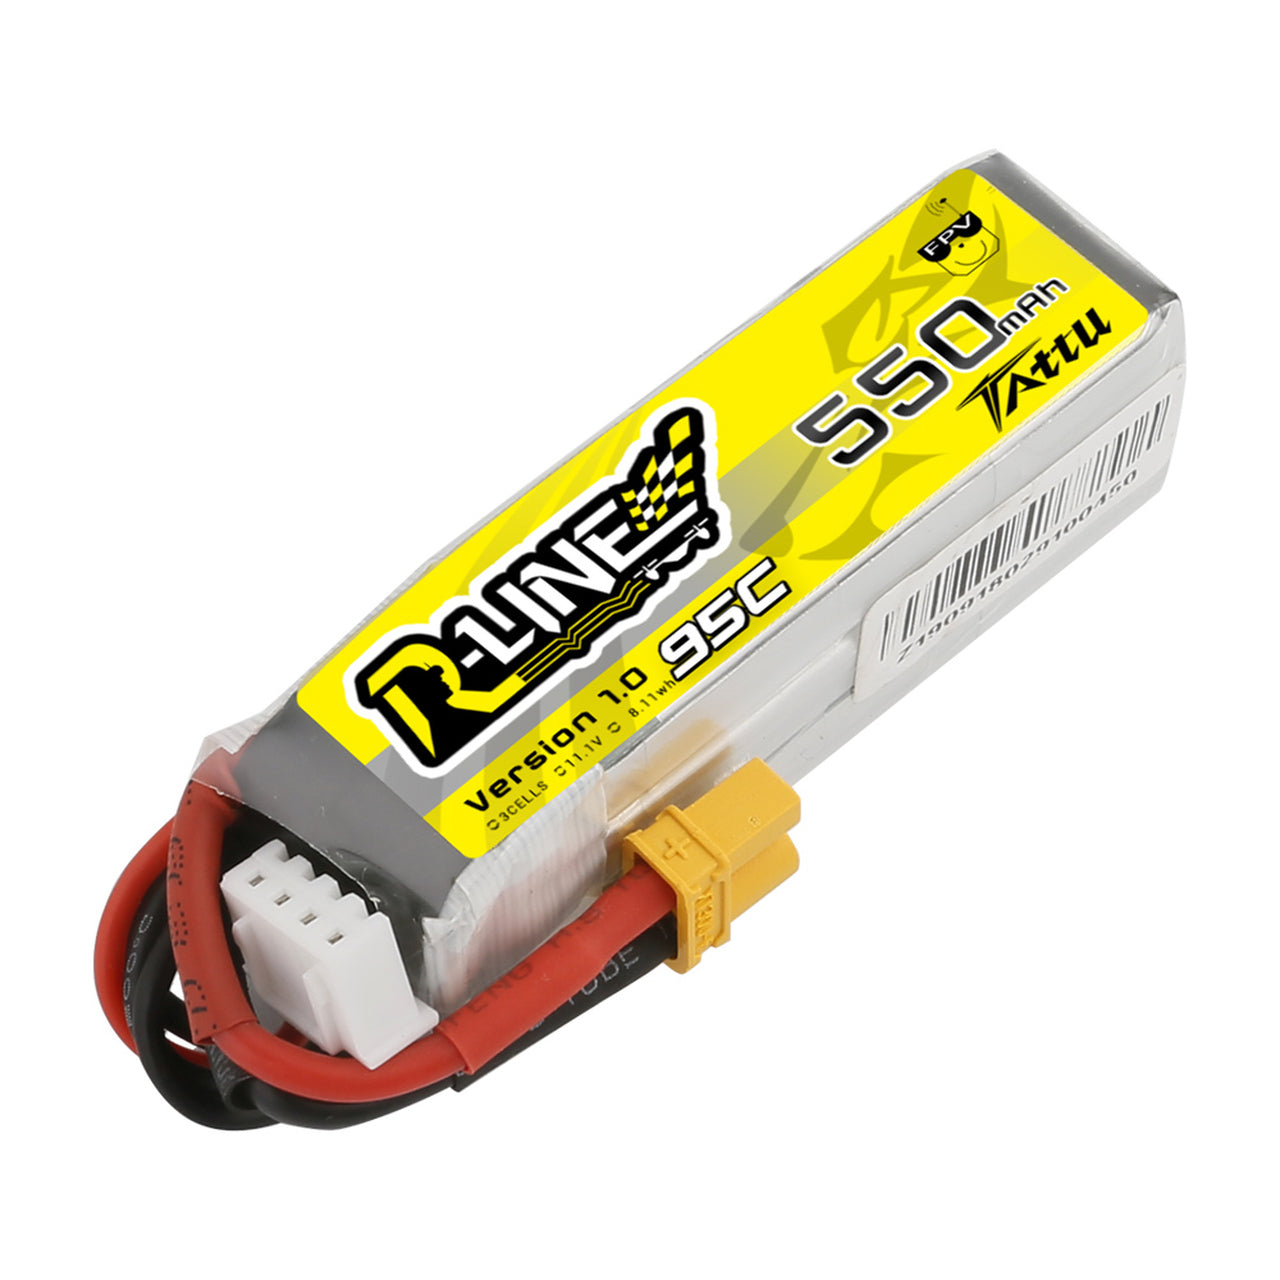 Tattu R-Line 550mAh 11.1V 95C 3S1P Lipo Battery Pack with XT30 Plug - DroneDynamics.ca